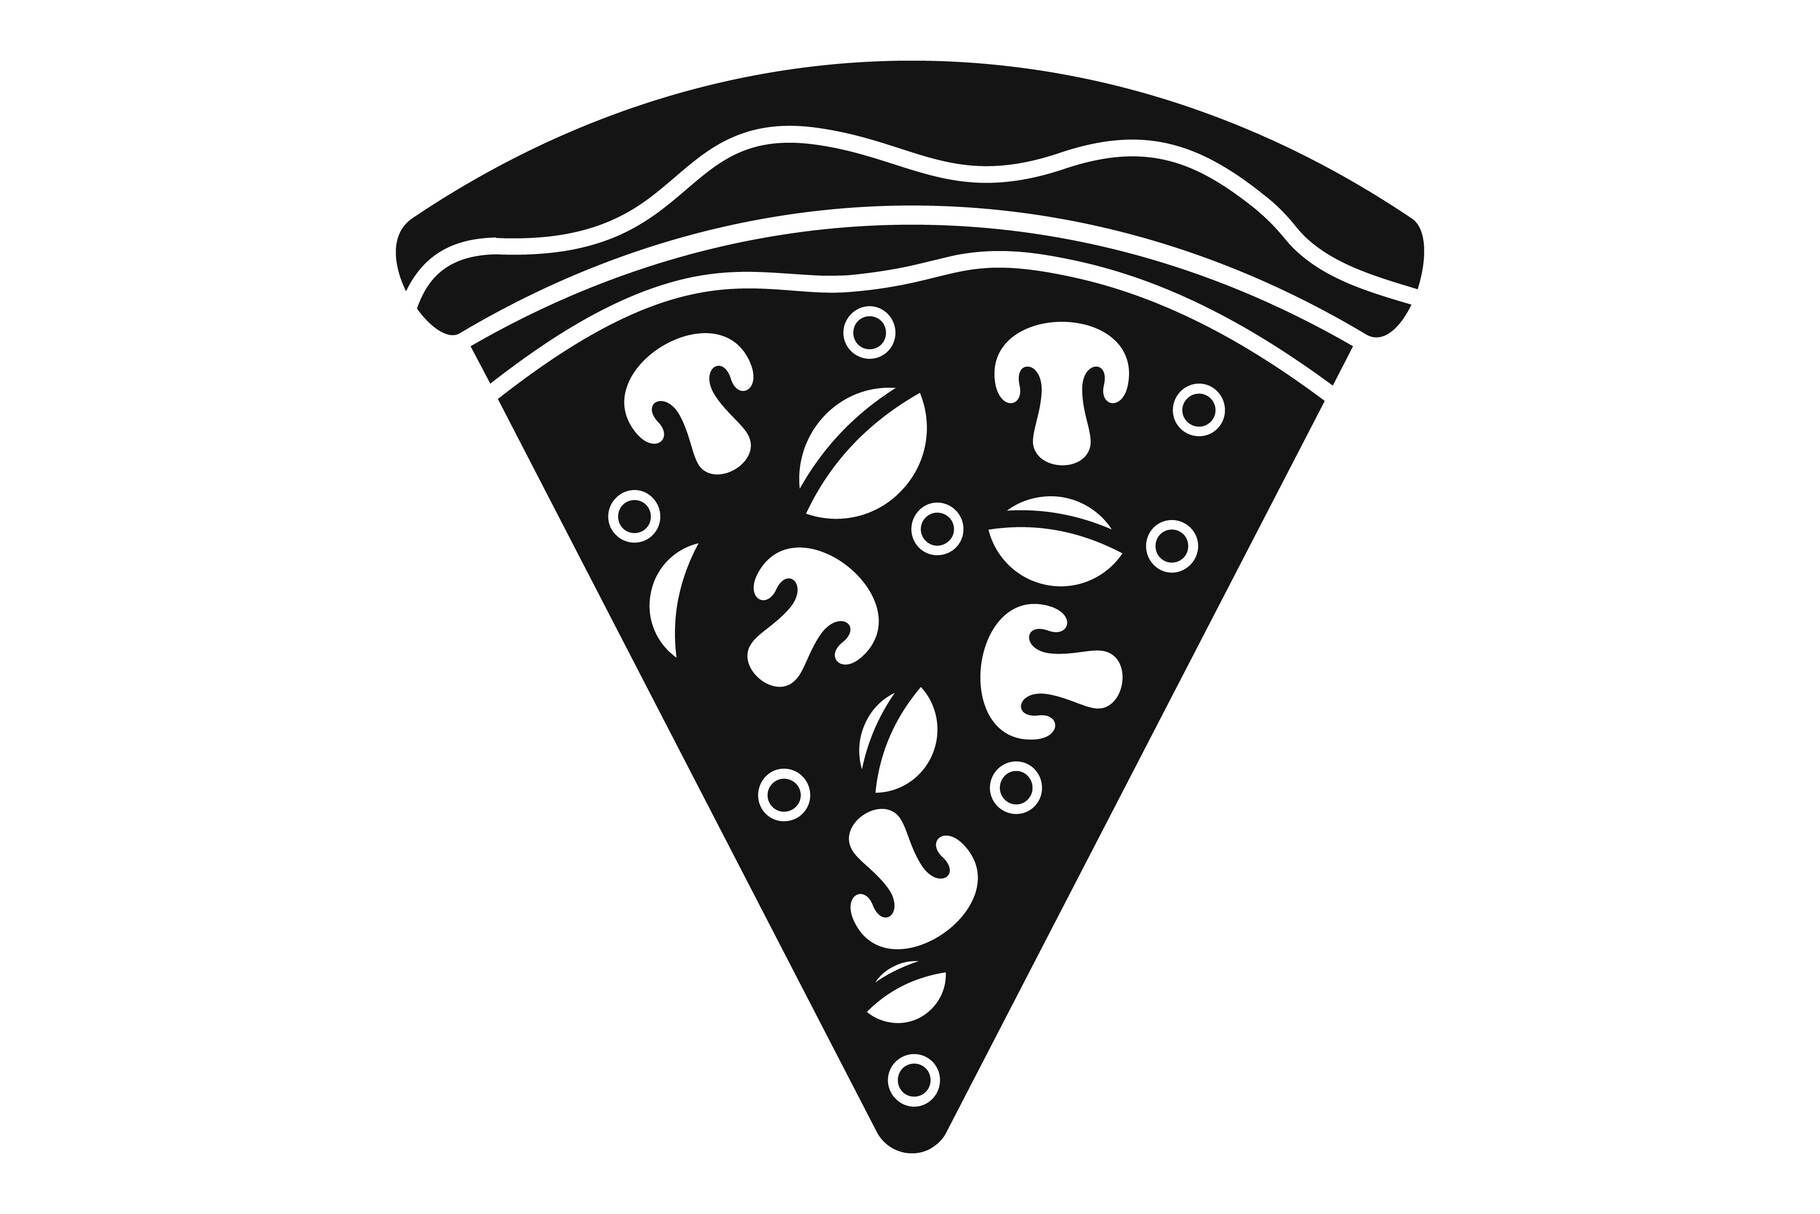 pizza slice clip art black and white